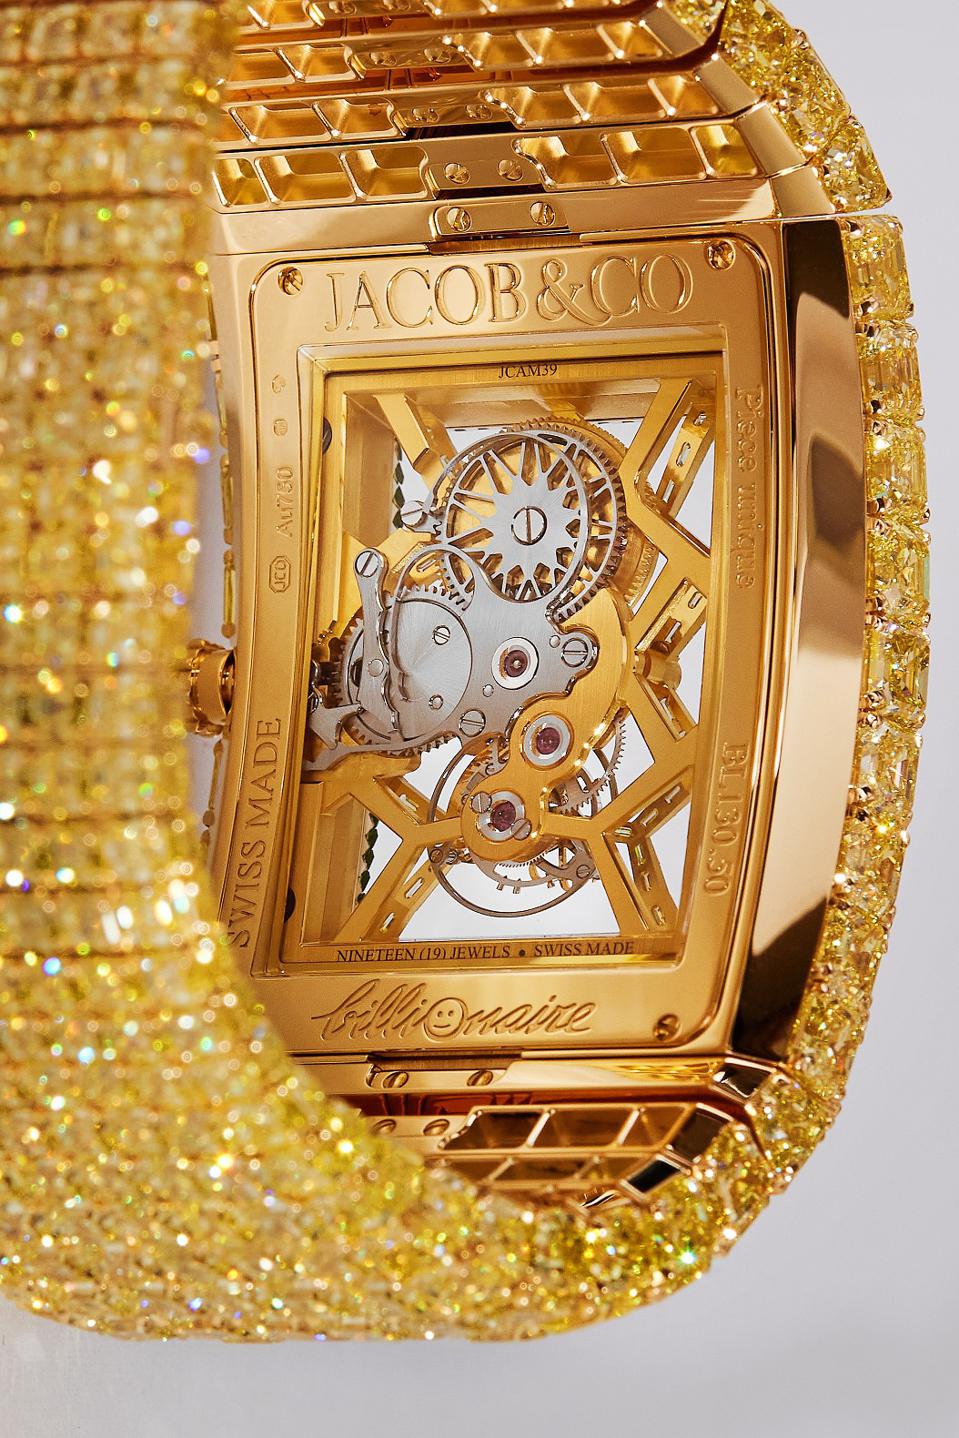 Chiếc đồng hồ trị giá 500 tỷ đồng có vật liệu và thiết kế gì đặc biệt?   - Ảnh 3